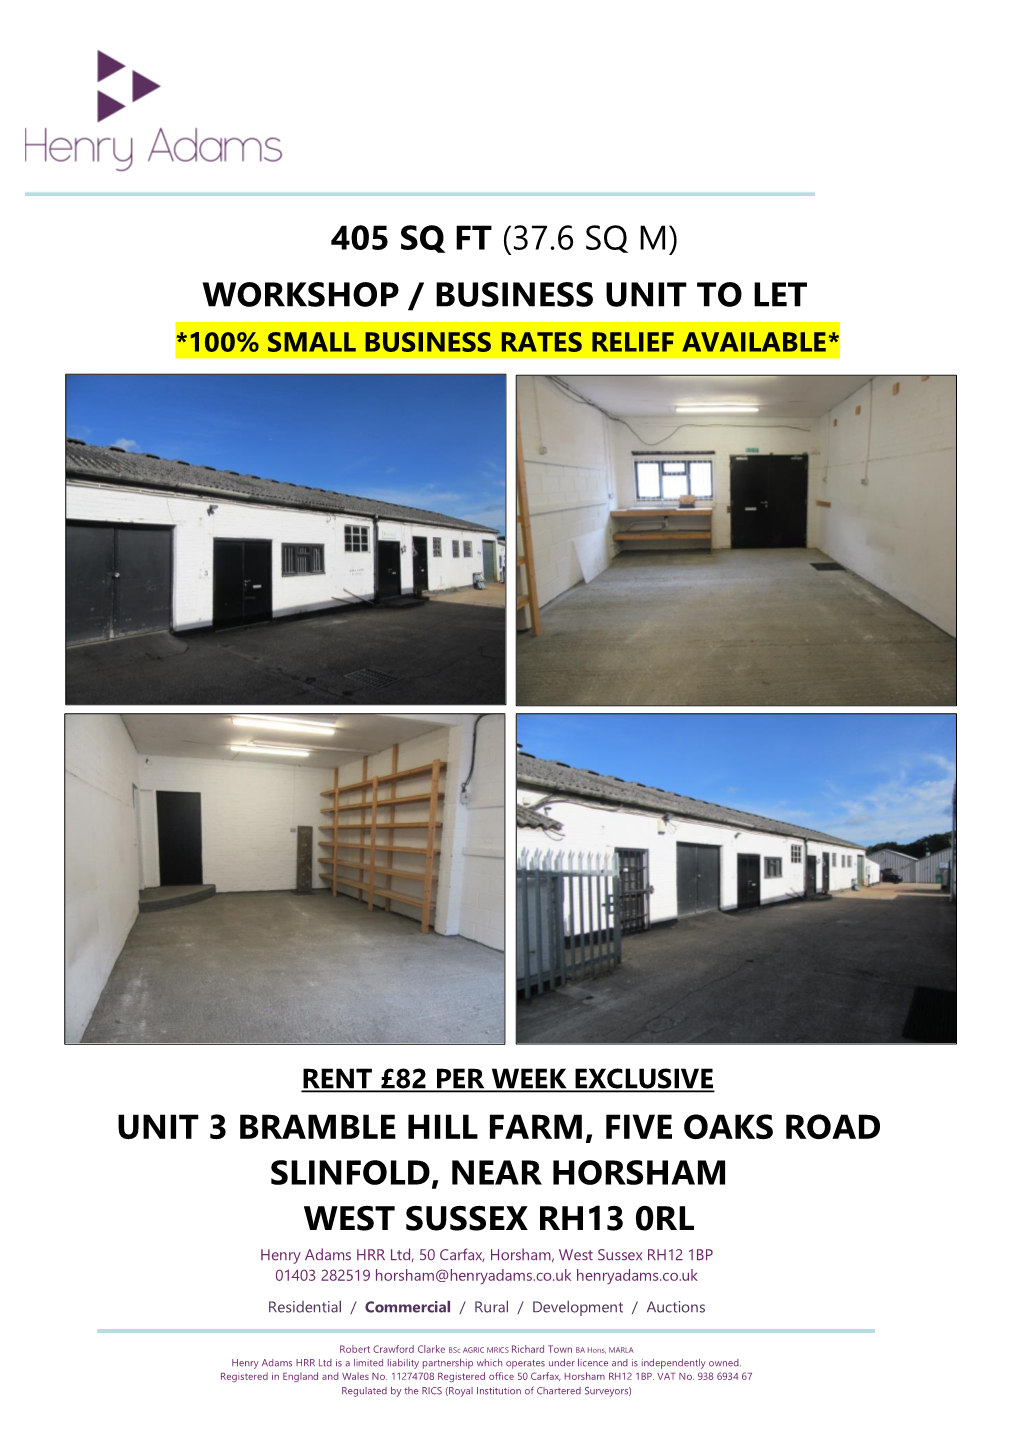 Workshop / Business Unit to Let Unit 3 Bramble Hill Farm, Five Oaks Road Slinfold, Near Horsham West